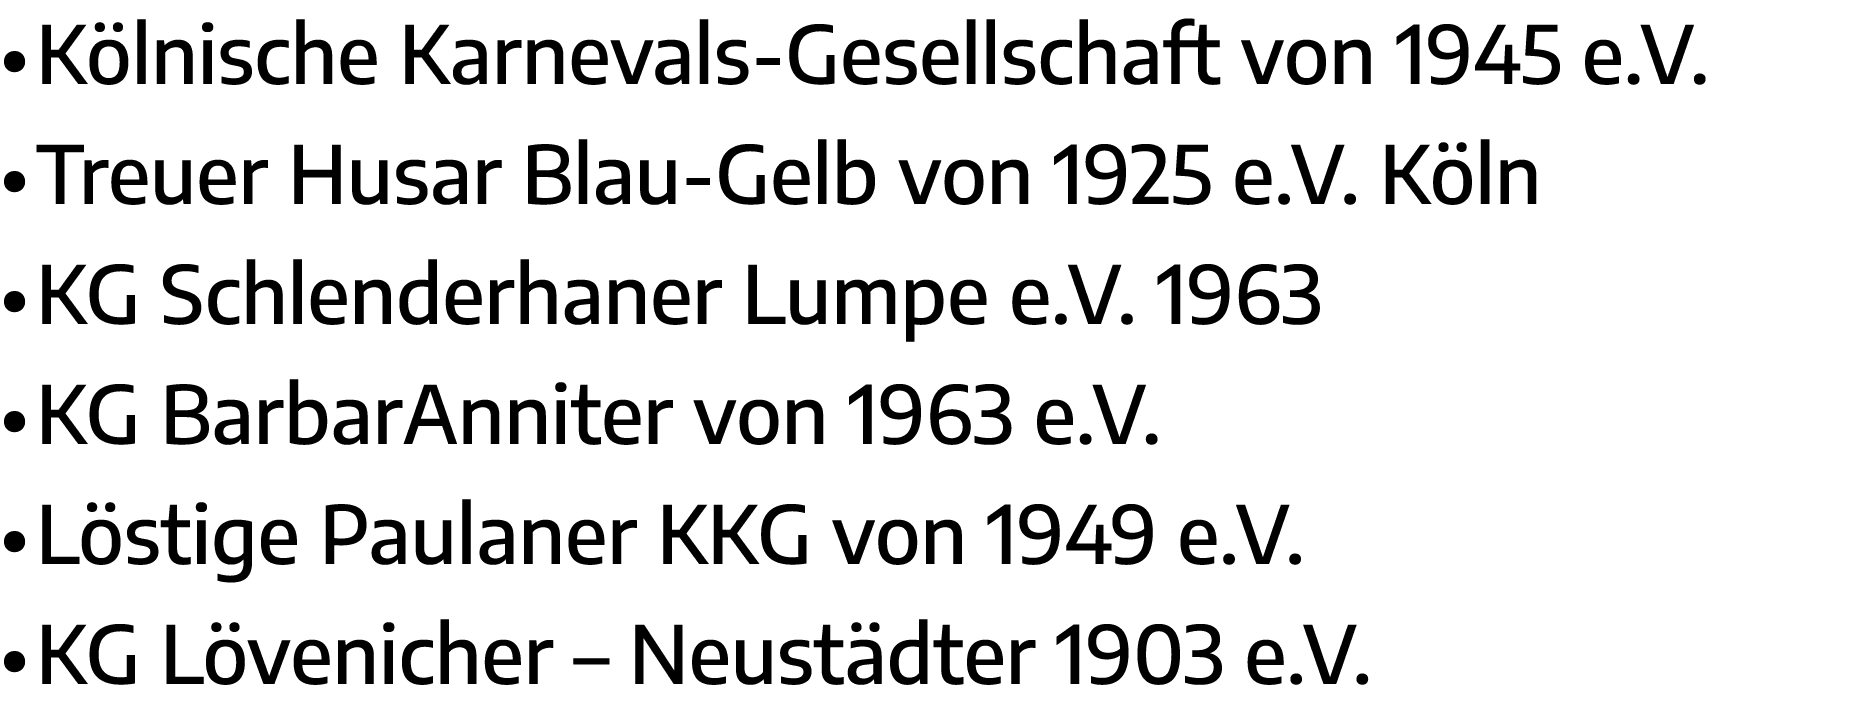   Kölnische Karnevals-Gesellschaft von 1945 e V    Treuer Husar Blau-Gelb von 1925 e V  Köln   KG Schlenderhaner Lump   